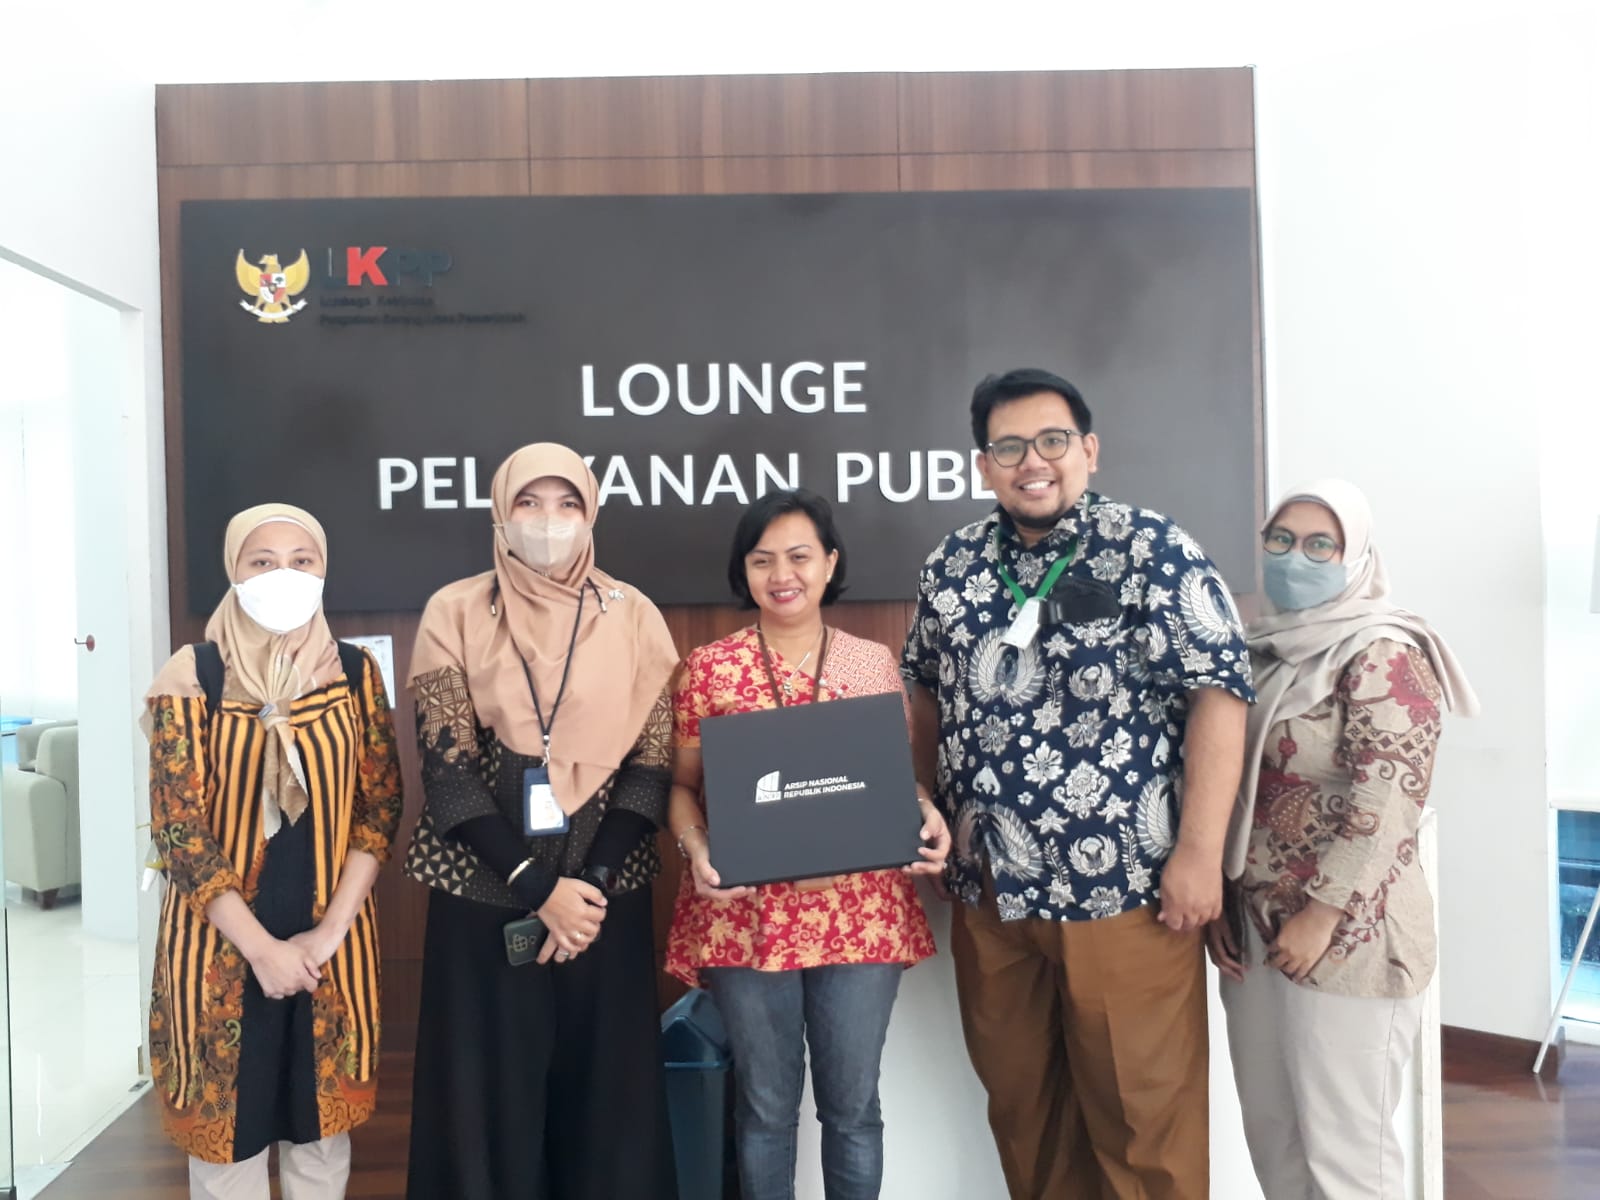 Pusat Studi Arsip Pemberantasan Korupsi ANRI Berkunjung ke Lounge Pelayanan Publik LKPP